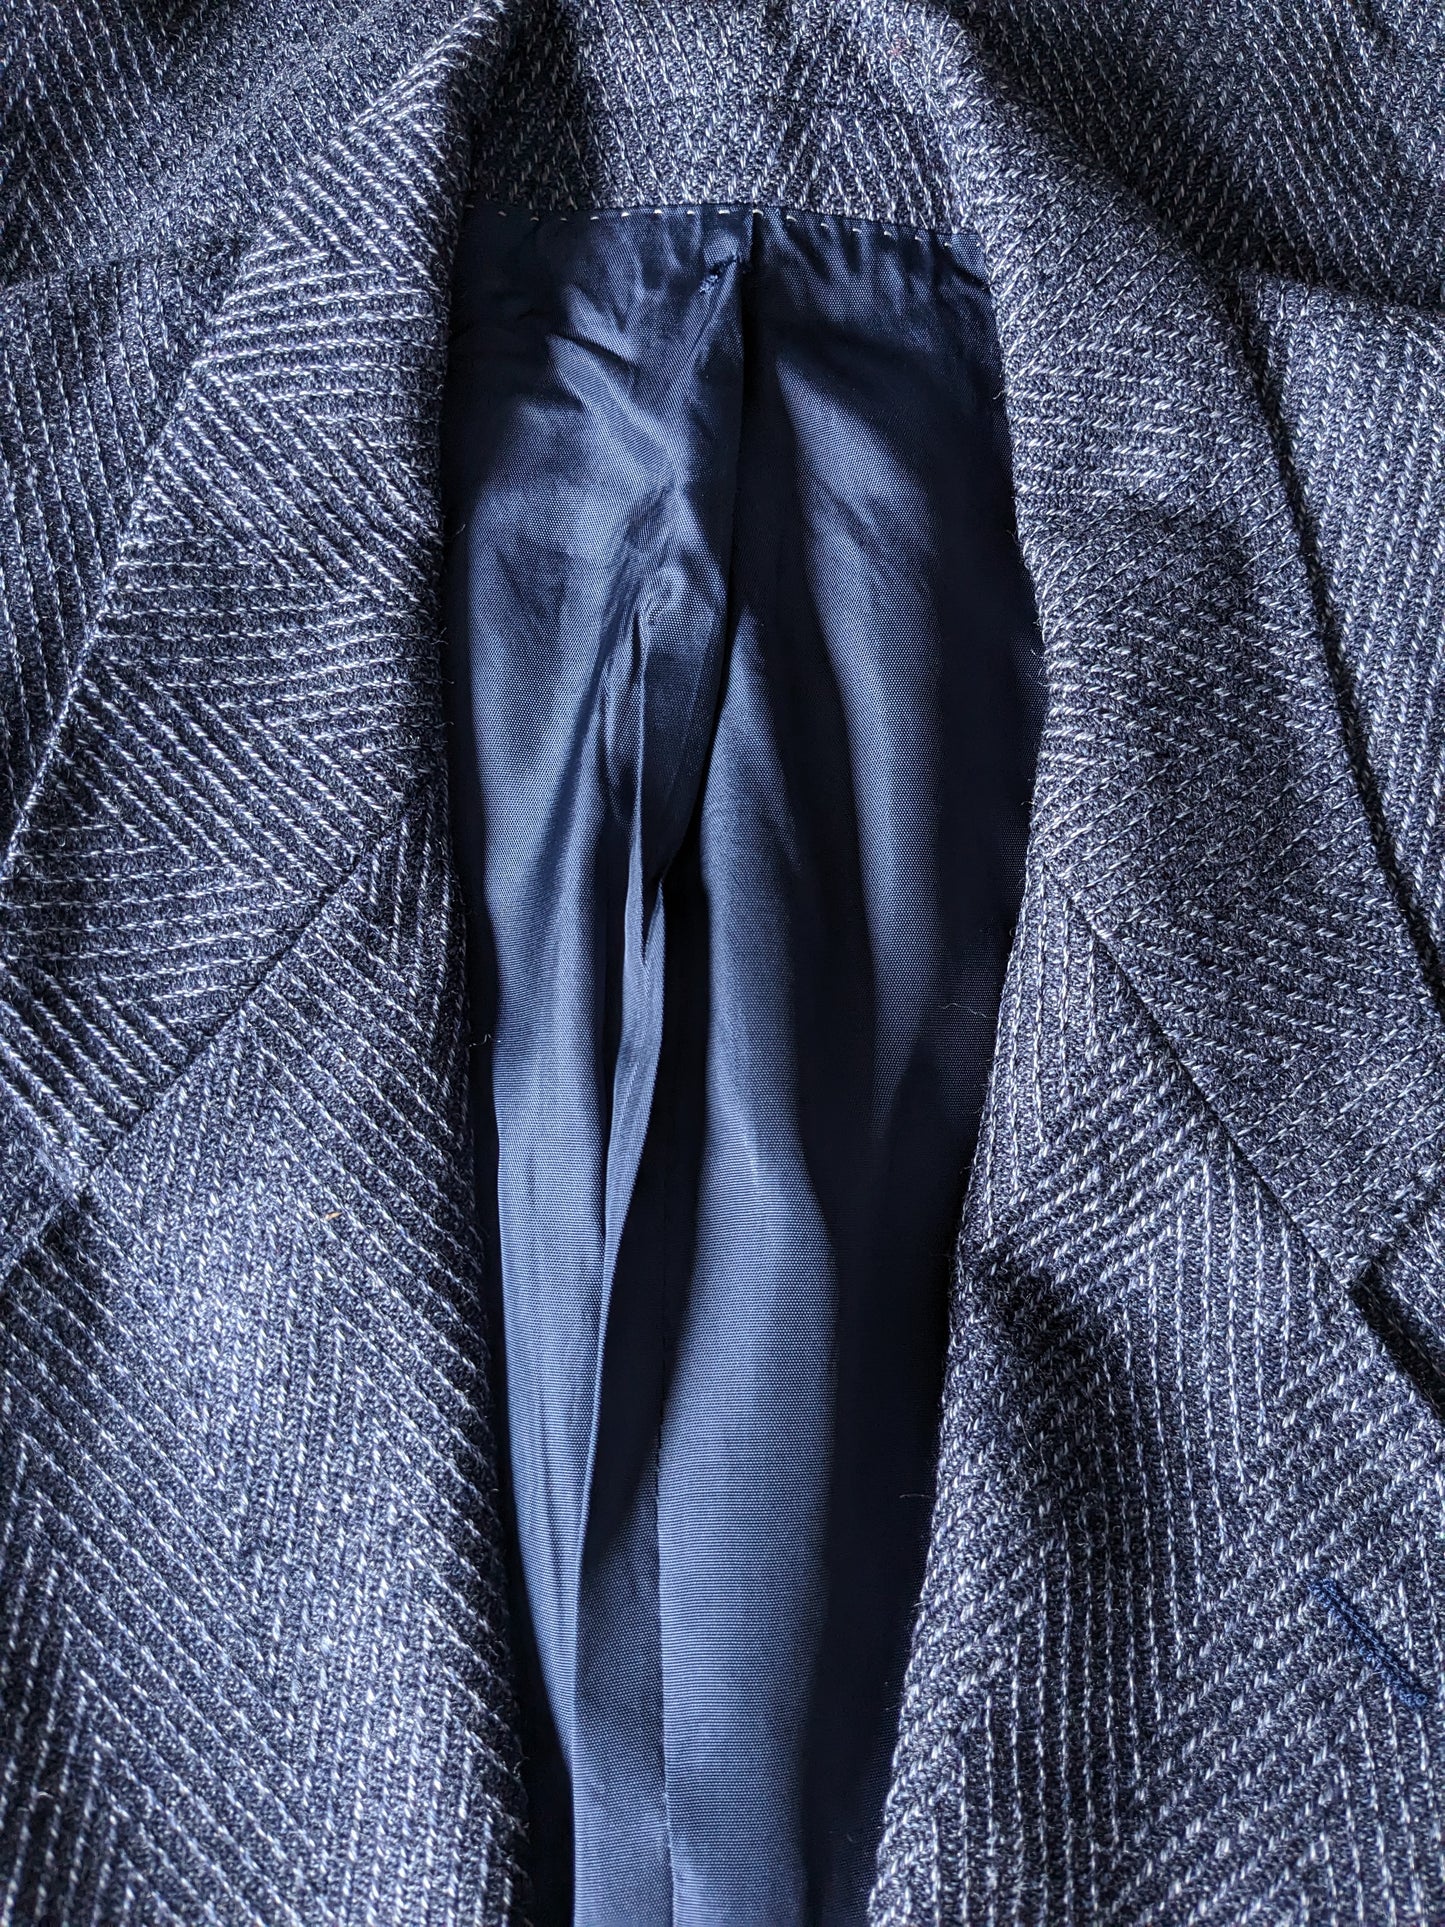 Vintage Doppelbrust Emilio Sandrini Colbert. Blau schwarz grau gemischt. Größe 46 / S.